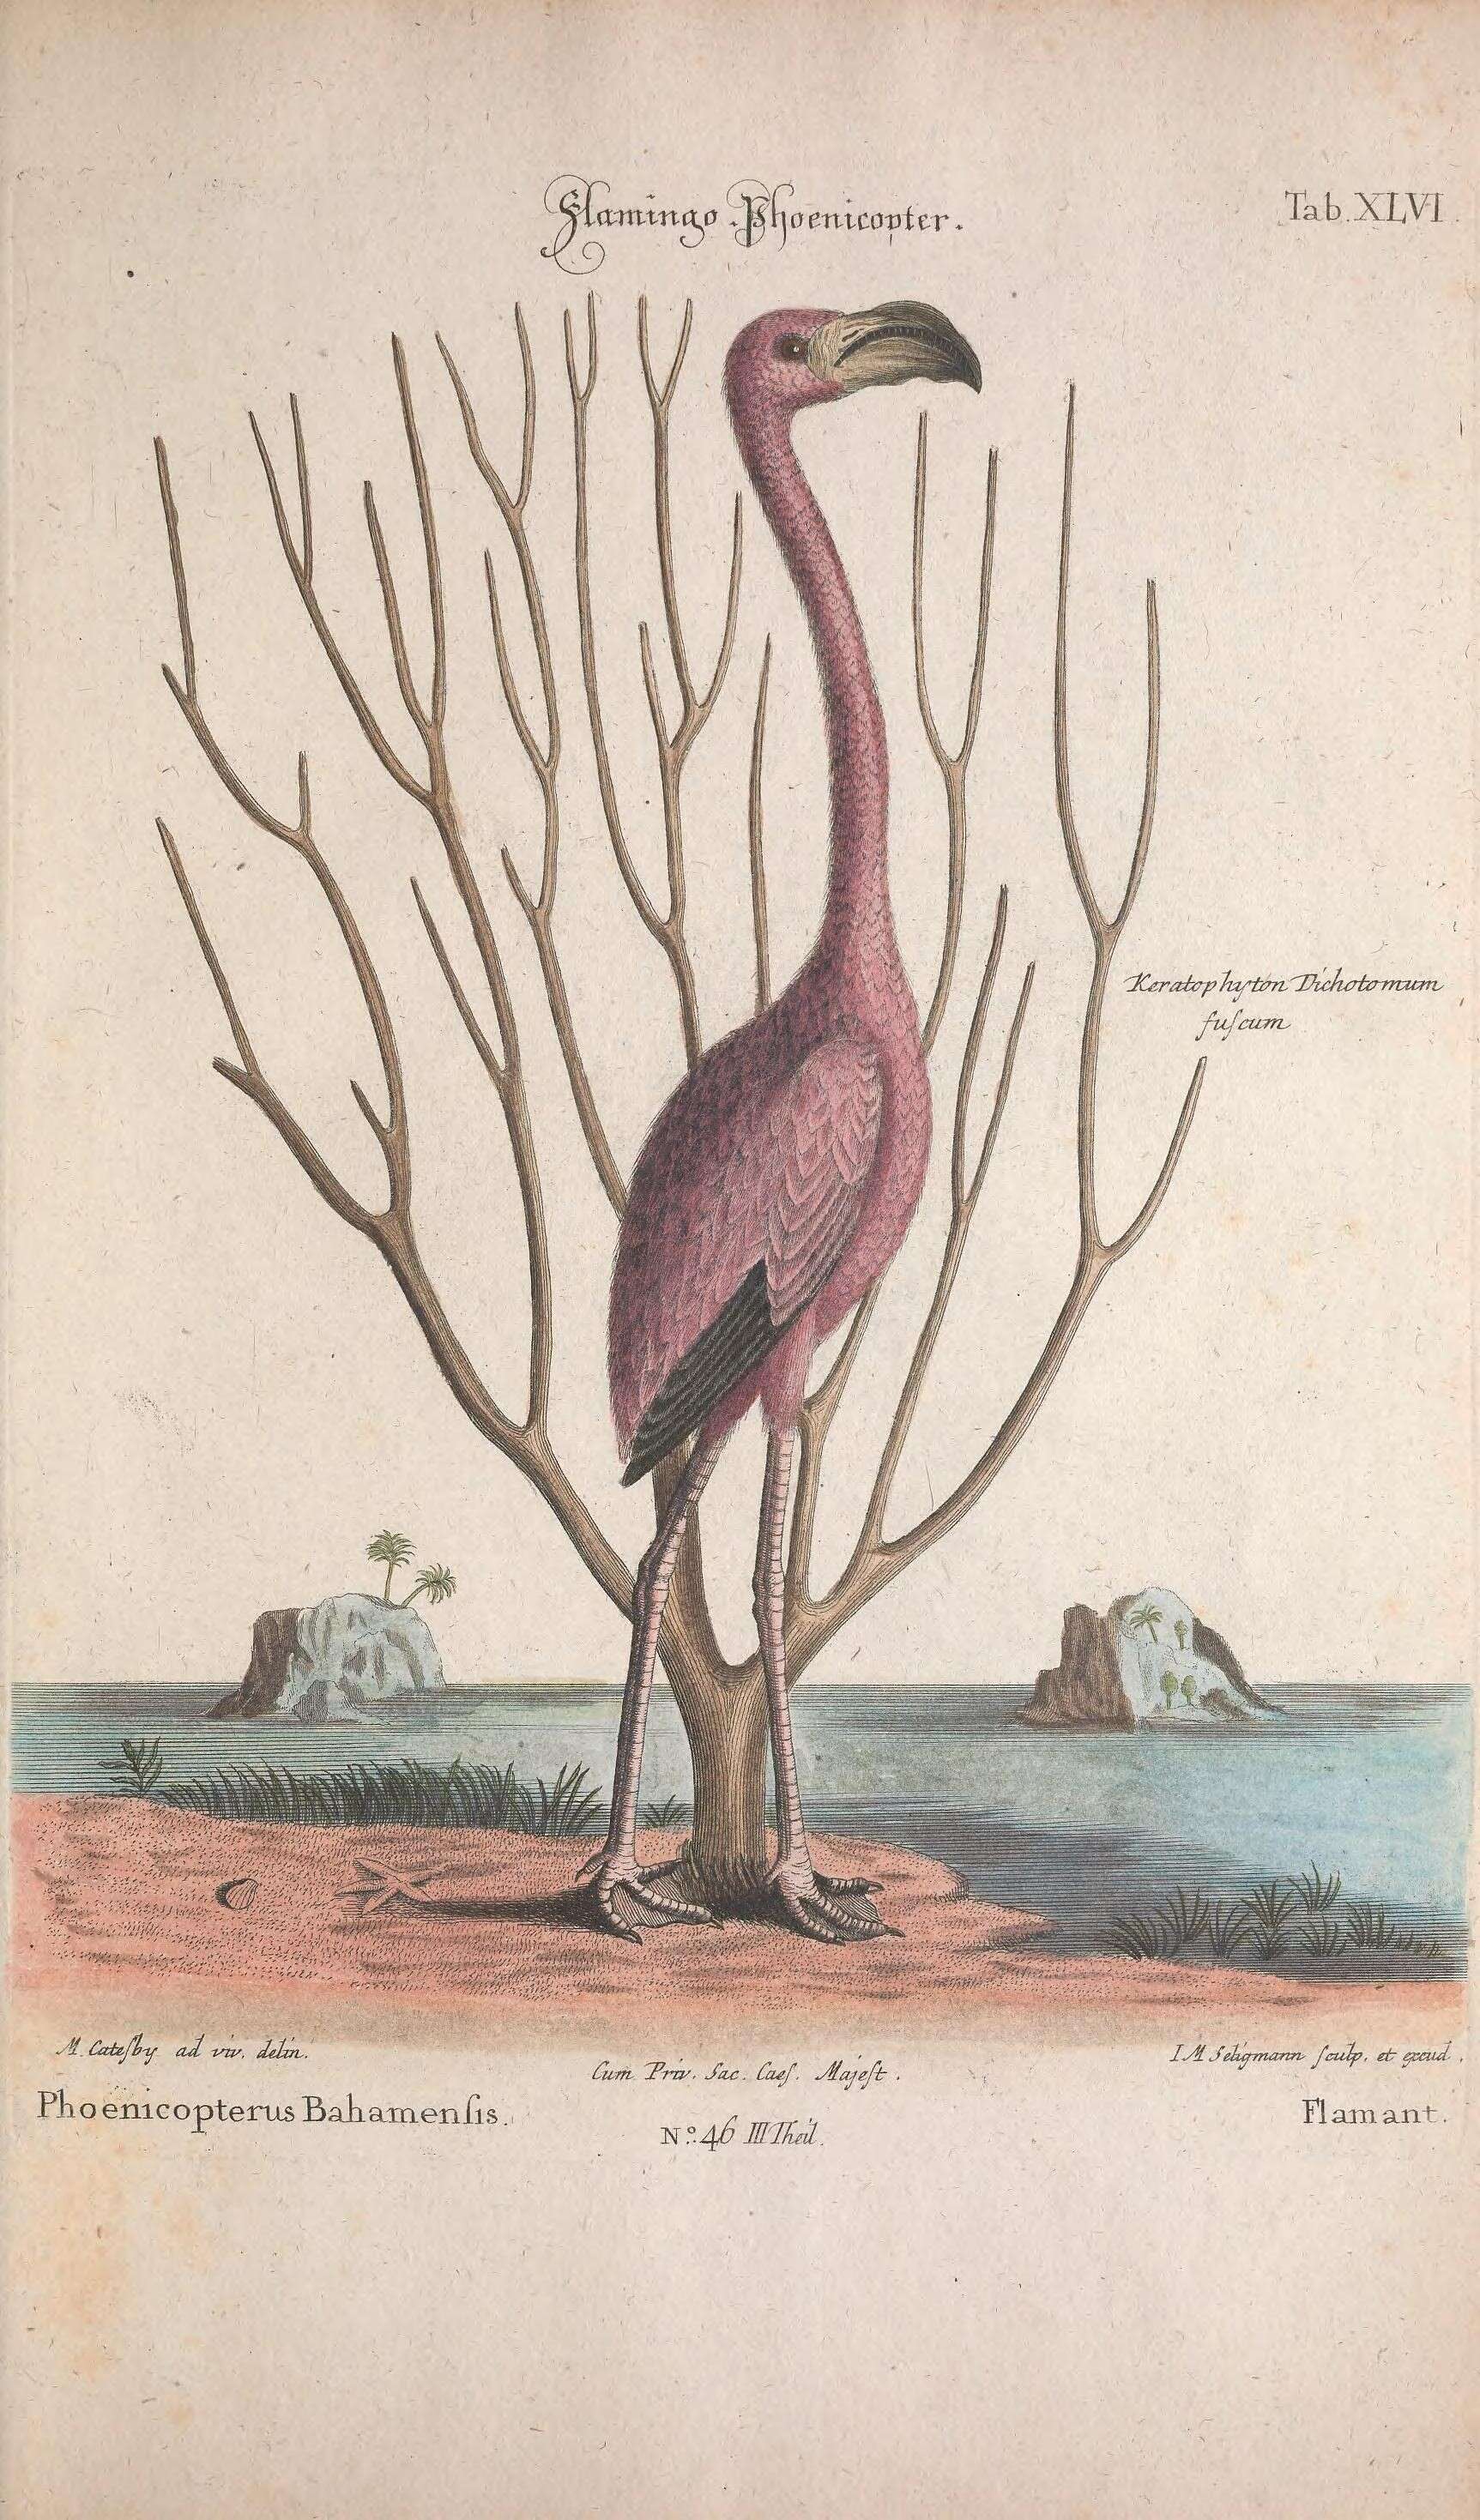 Imagem de Phoenicopterus ruber Linnaeus 1758